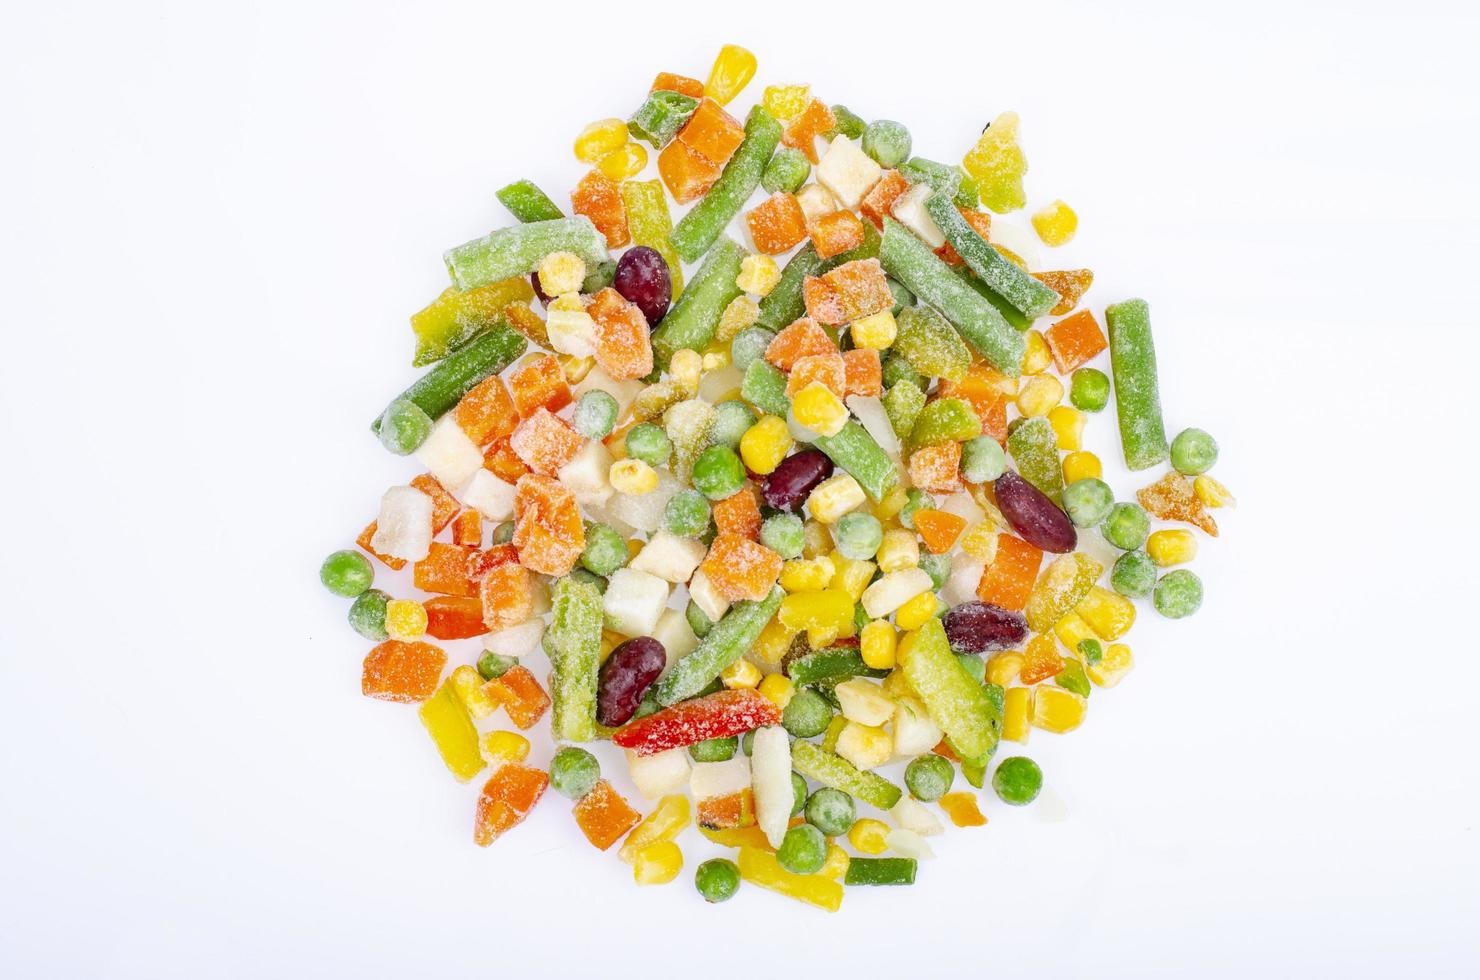 mezcla de diferentes verduras congeladas, alimentación saludable, conservación de vitaminas. foto de estudio